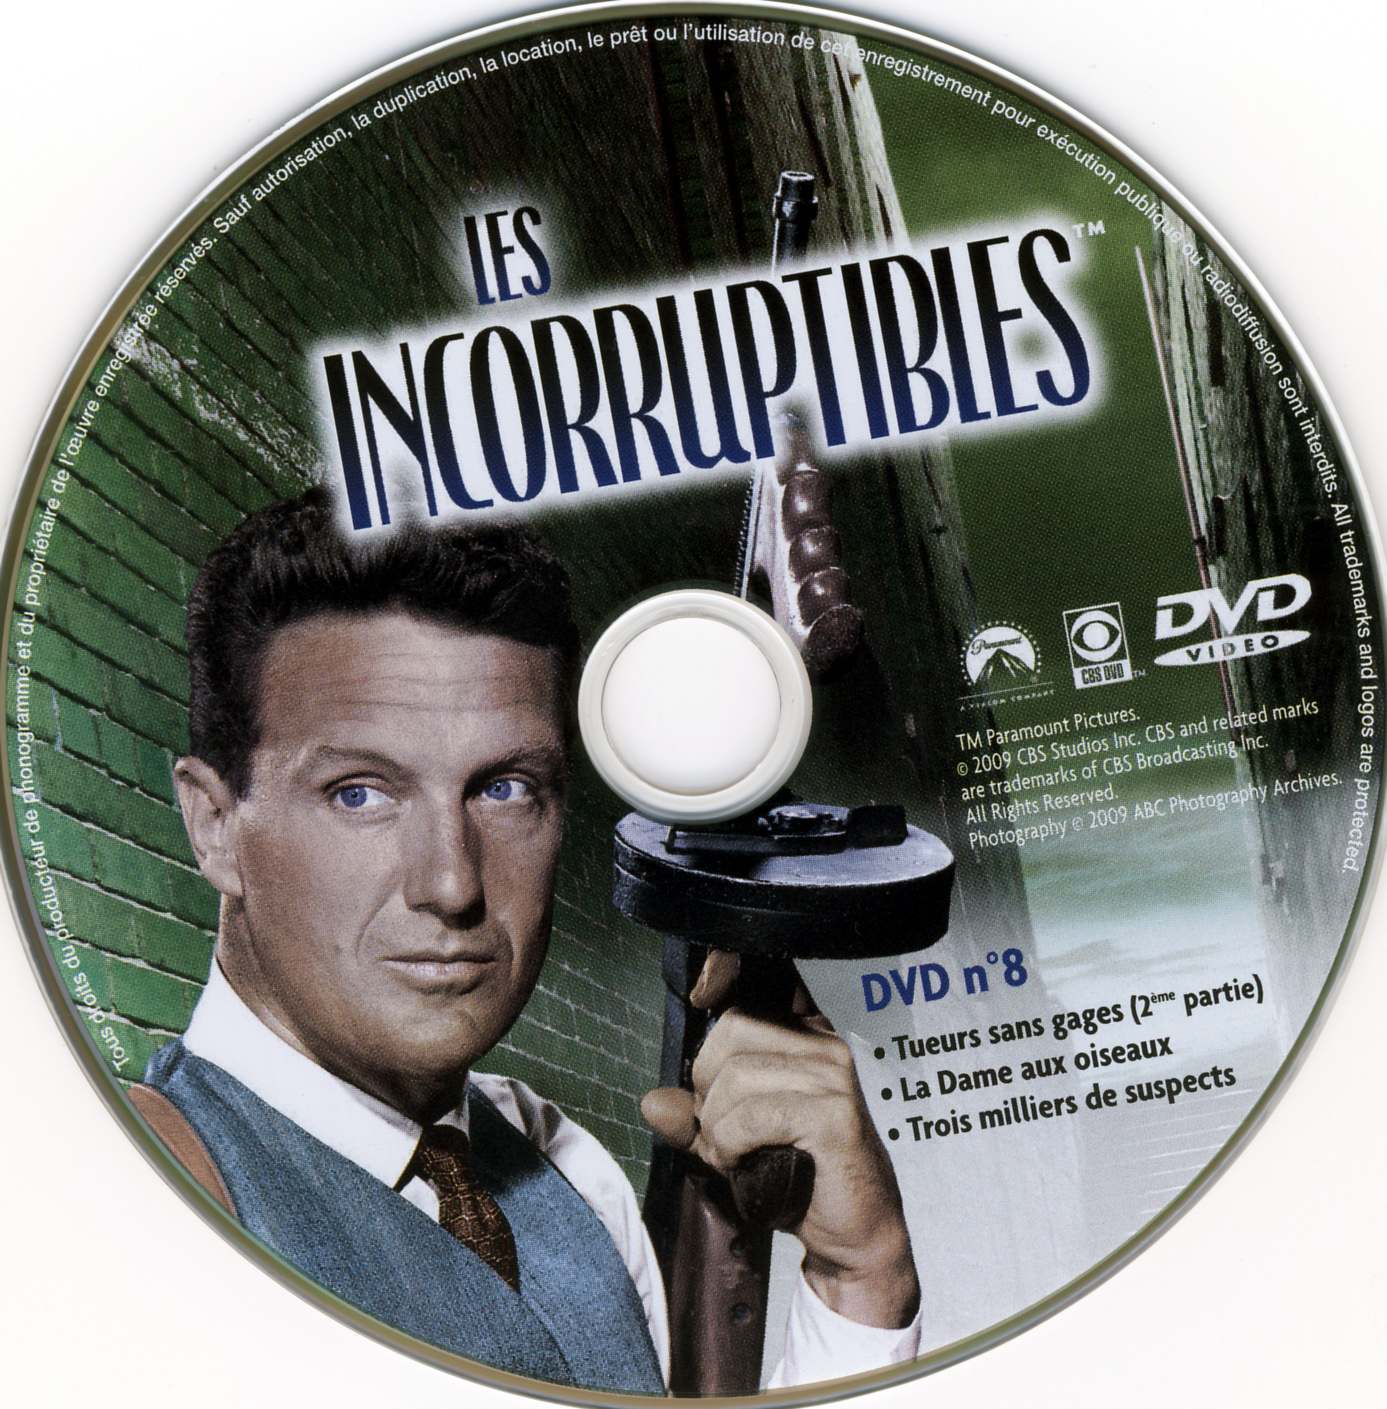 Les incorruptibles intgrale DVD 08